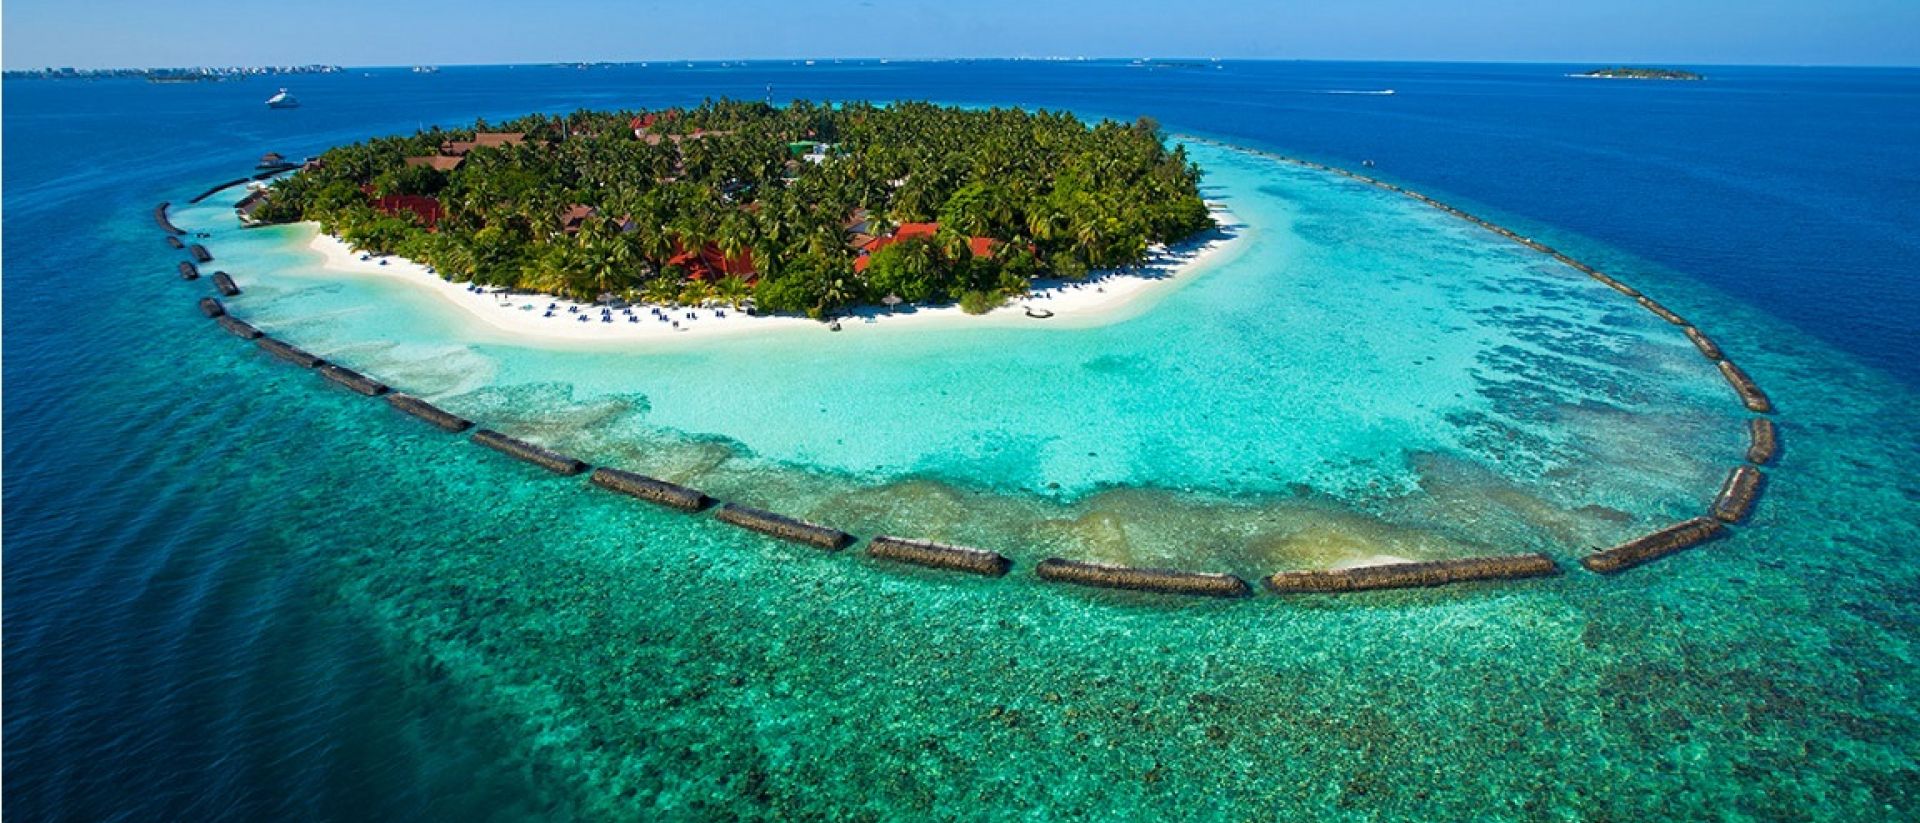 Las tres uves del turismo en Maldivas: Visitar, Vacunar, Vacaciones | Expreso